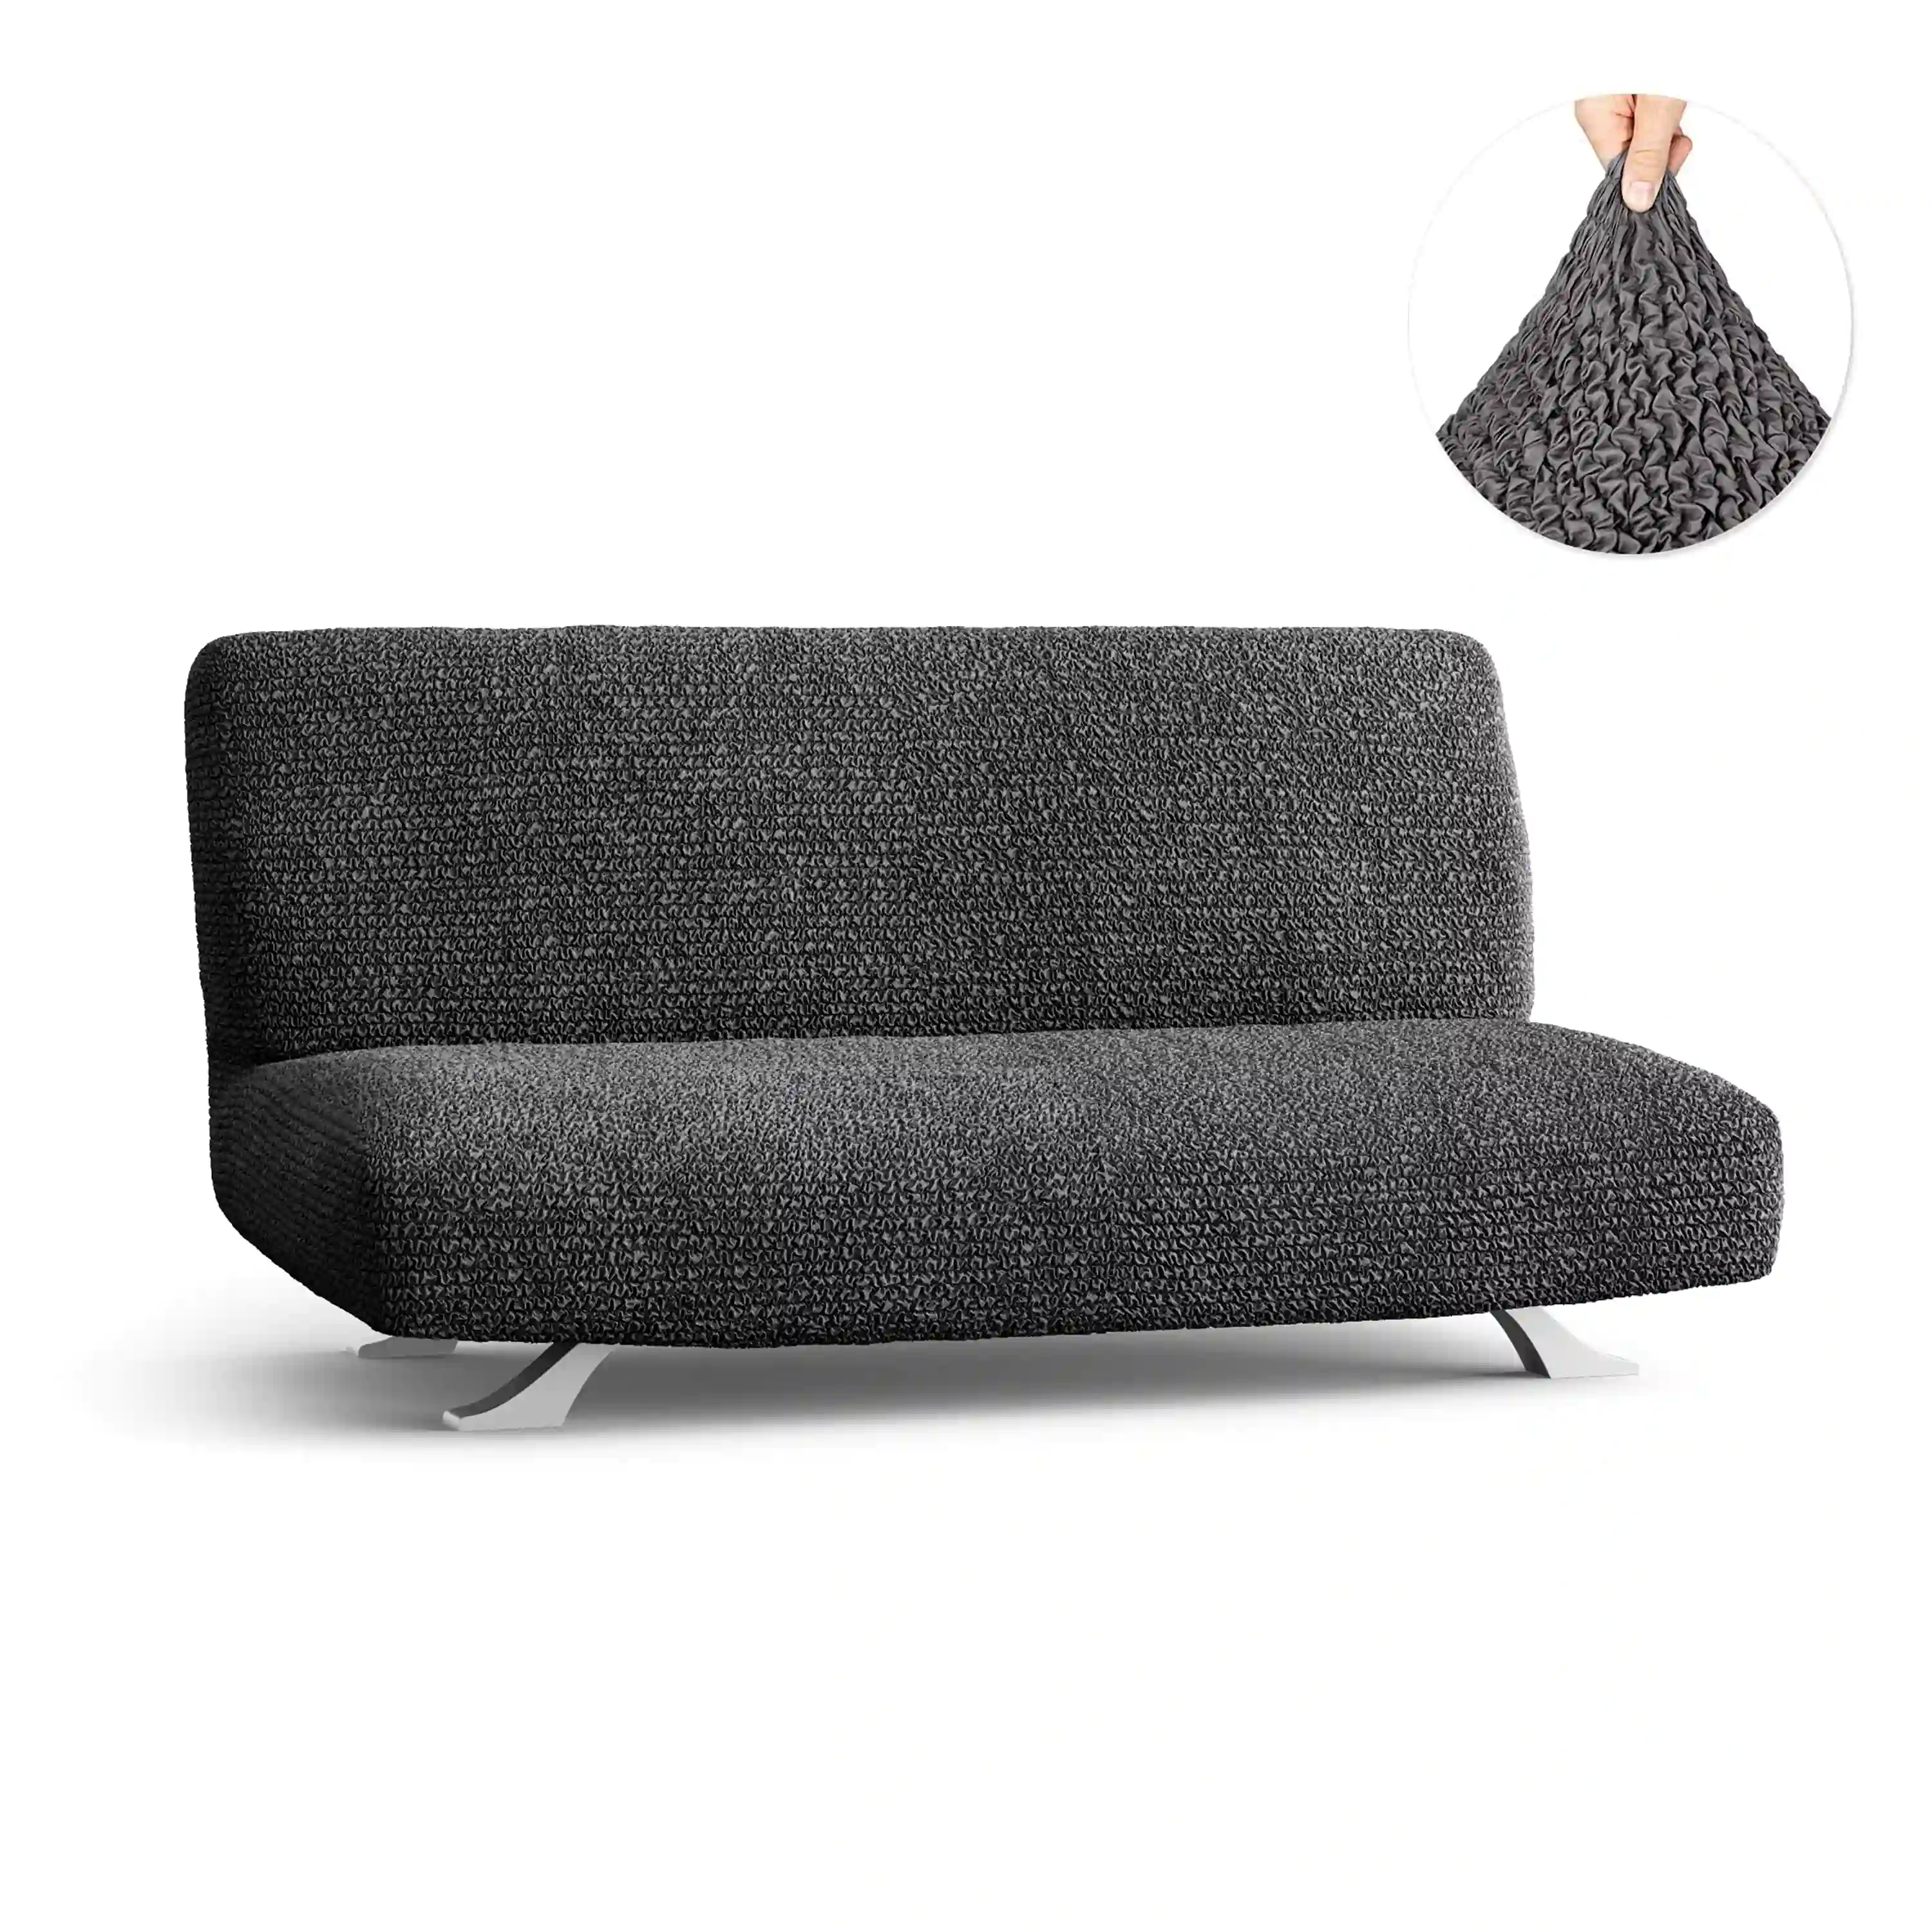 Housse pour canapé-lit futon sans accoudoirs - Anthracite, microfibre